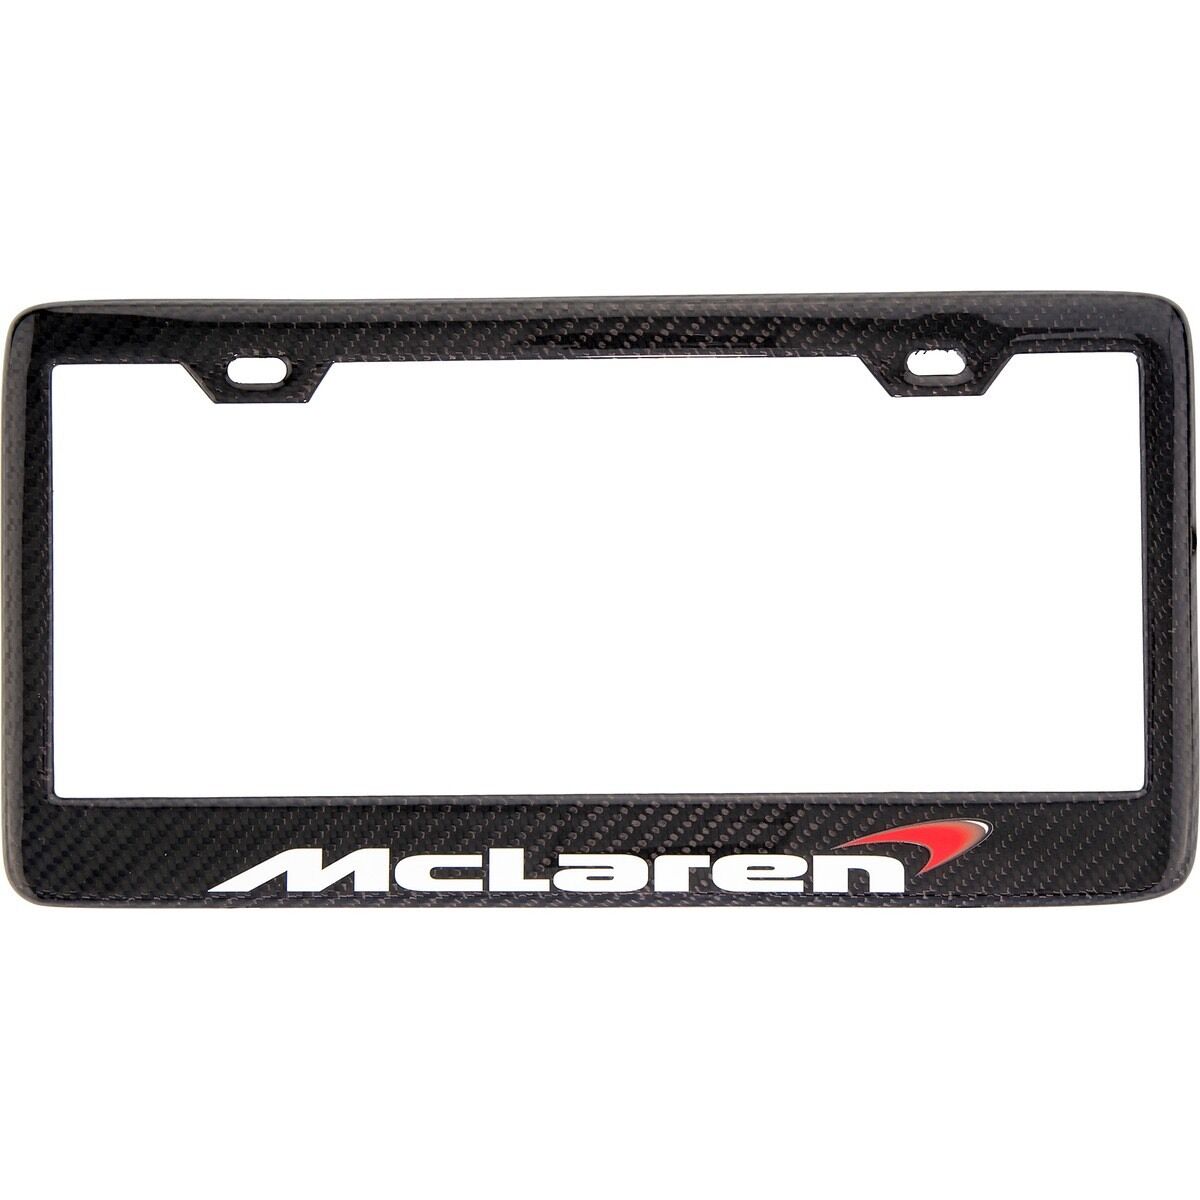 Real Handmade Carbon Fiber McLaren license plate frame p1 SHOW QUALITY